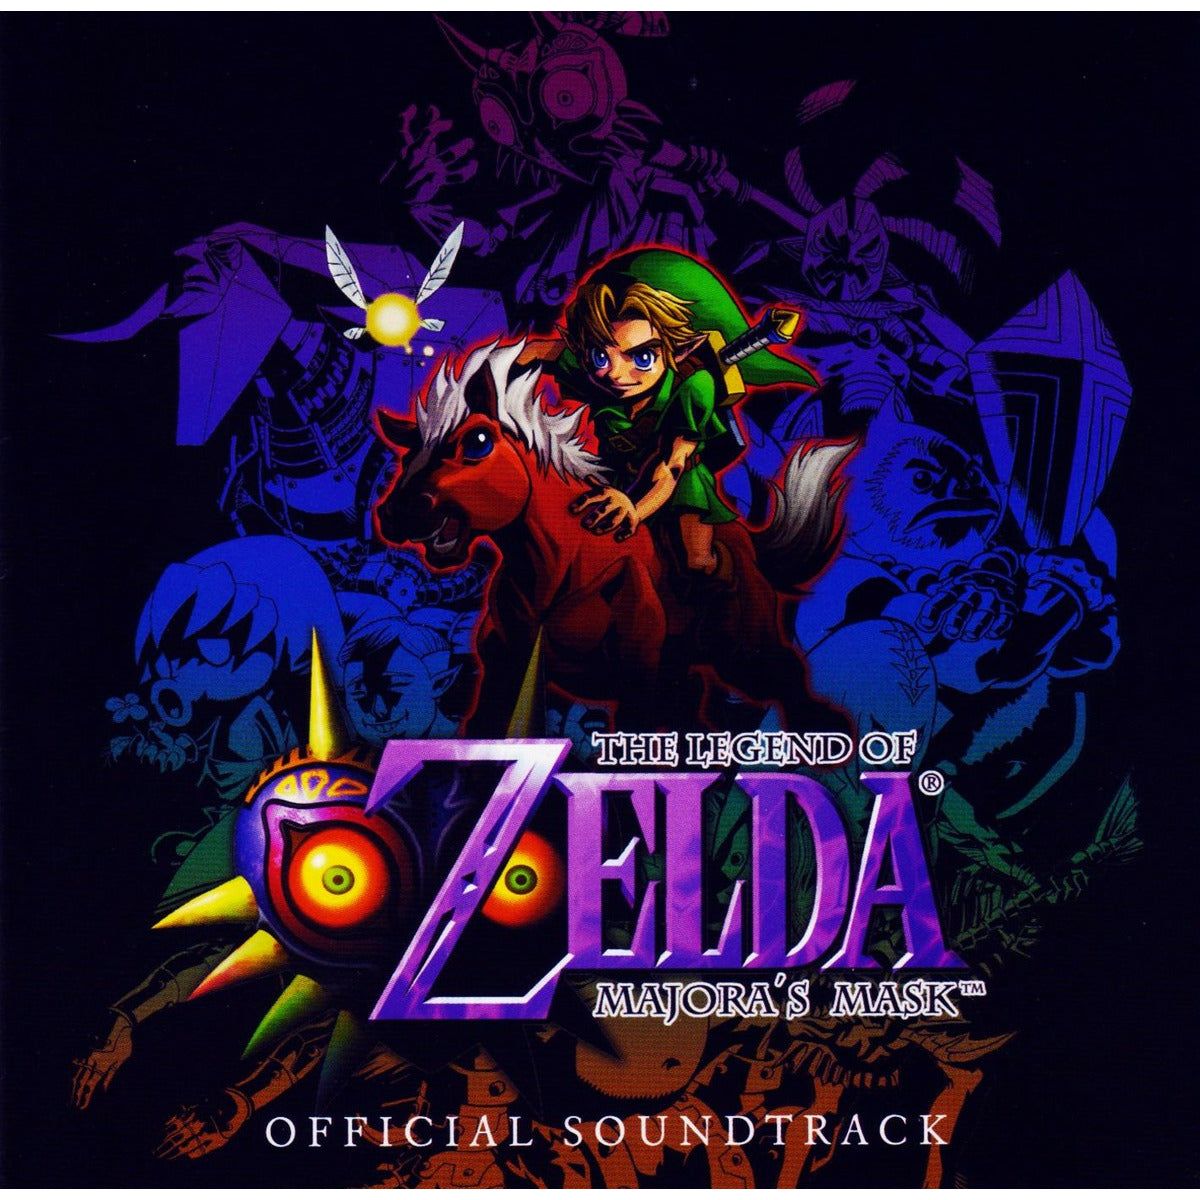 CD - The Legend of Zelda Majora's Mask Official Soundtrack (Sealed)